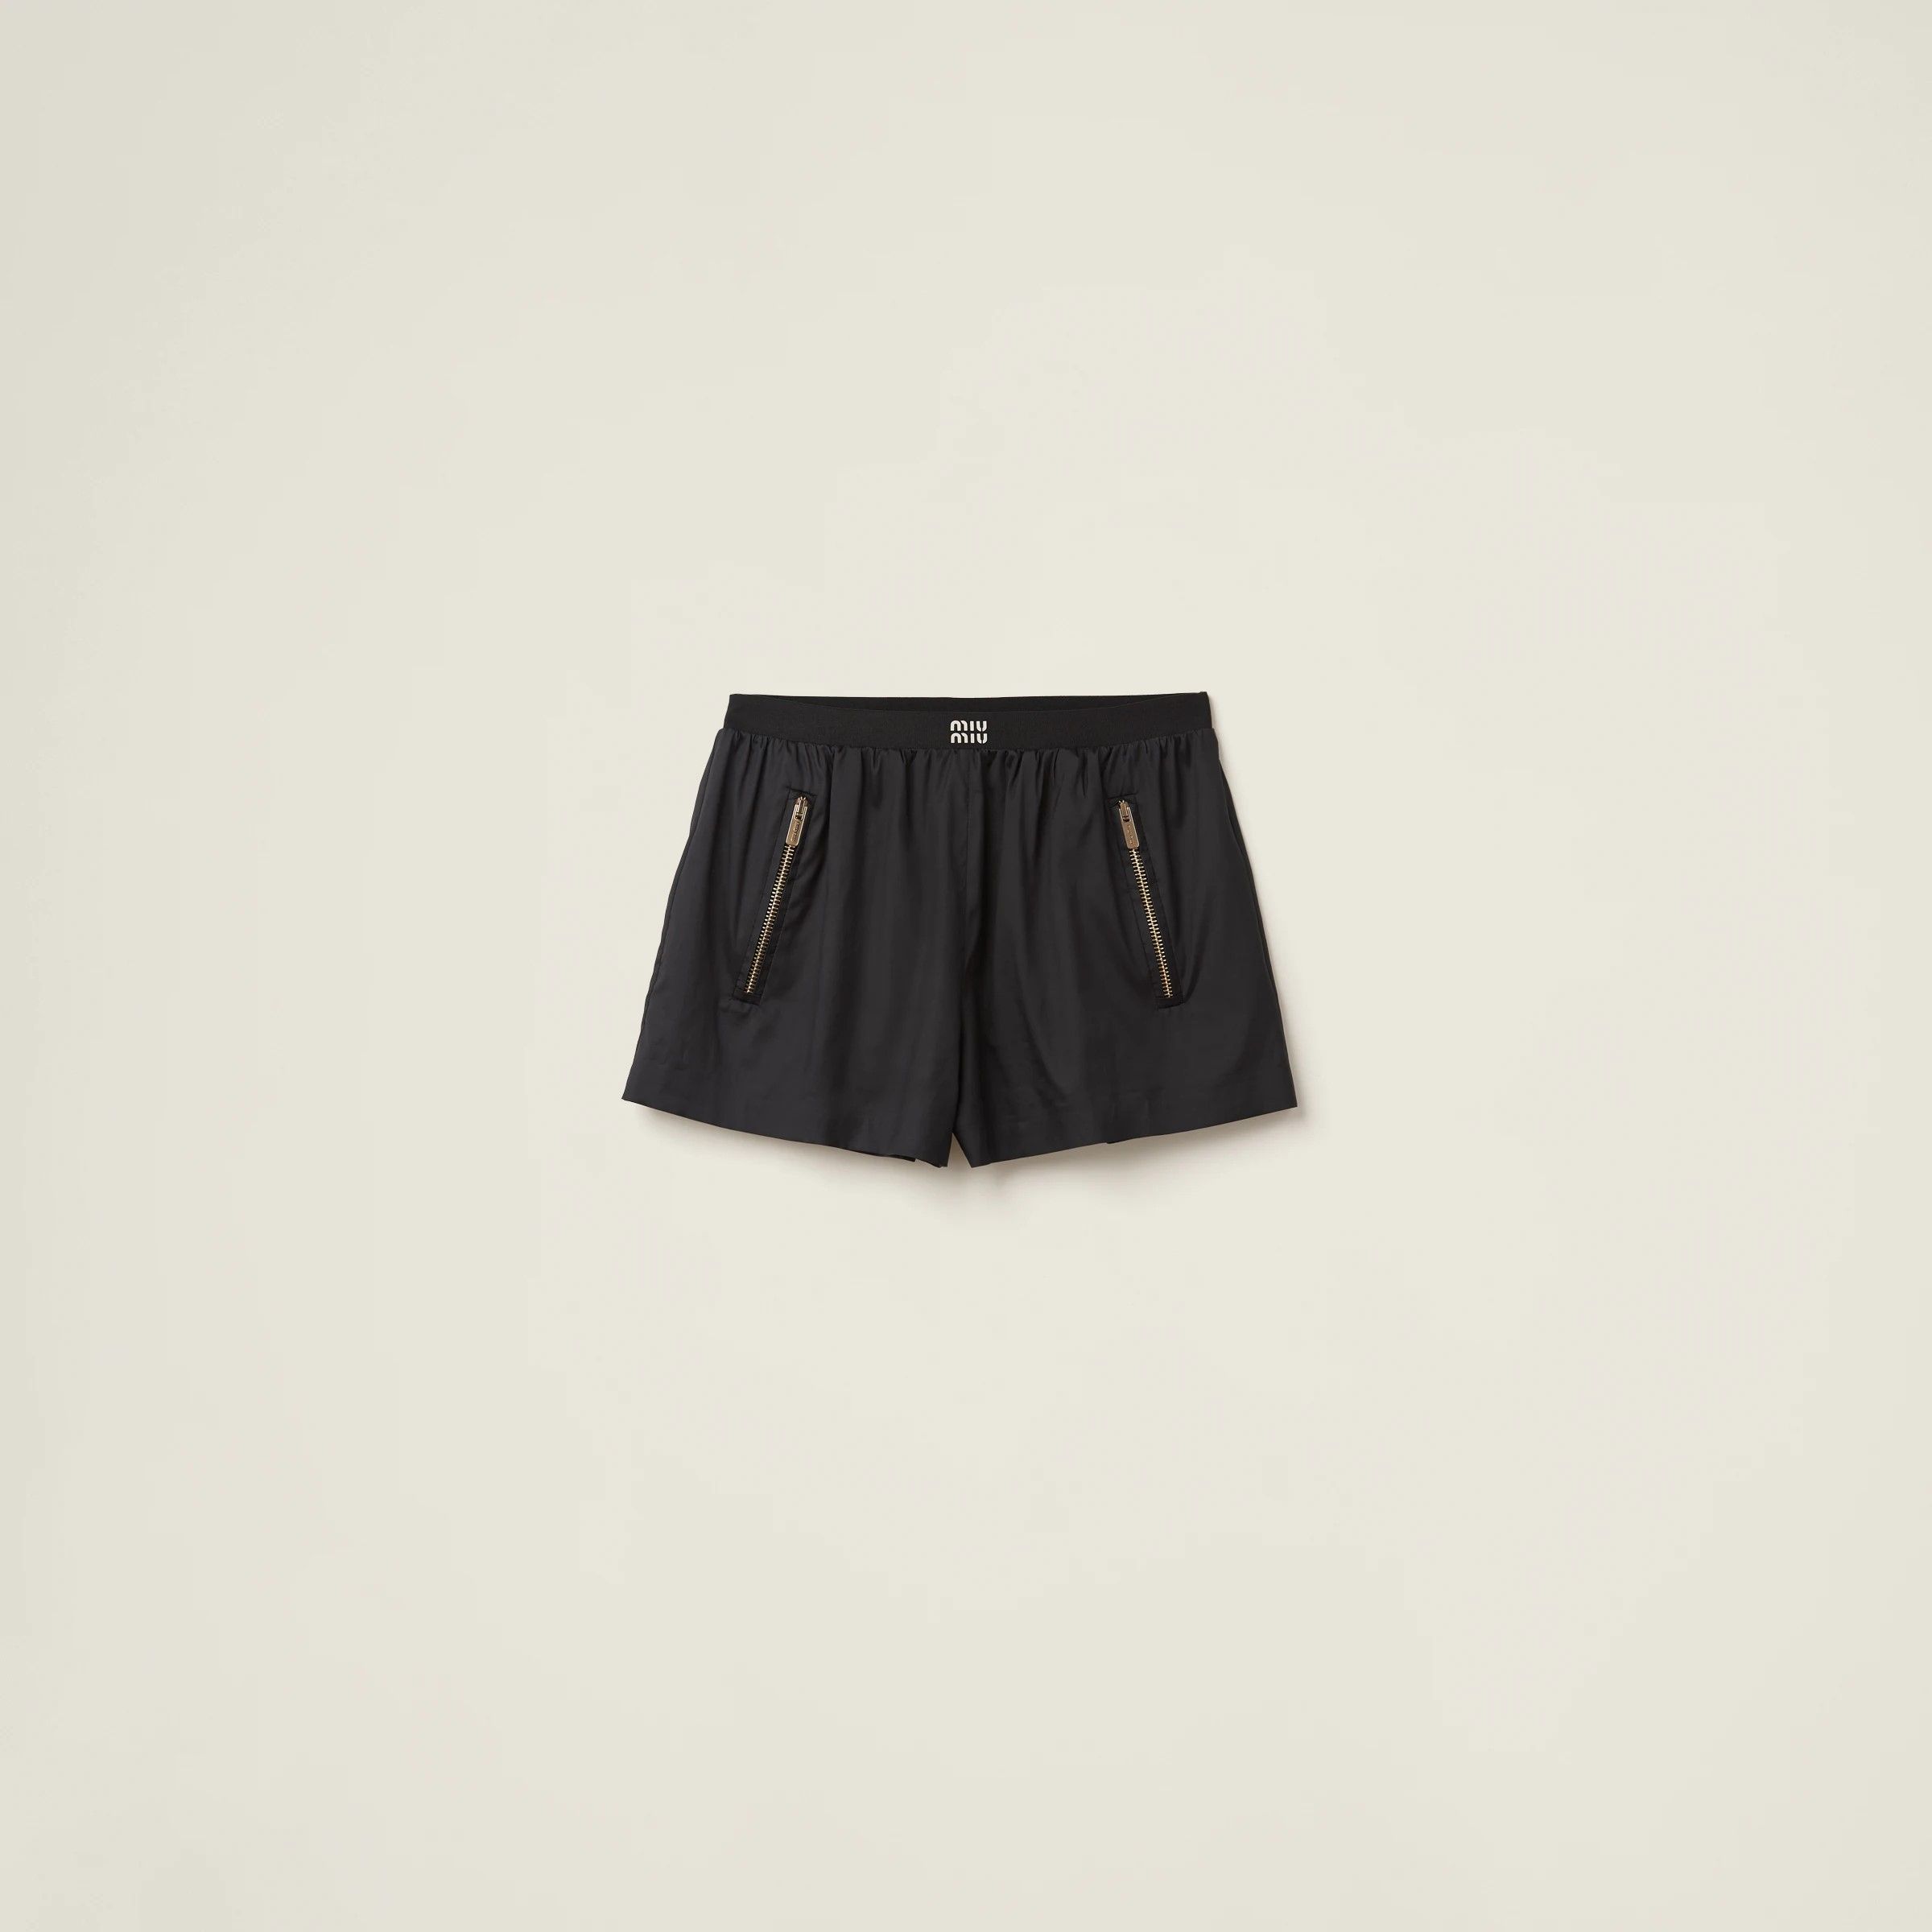 미우미우-테크니컬 실크 바지 프린팅 로고 Technical silk shorts with